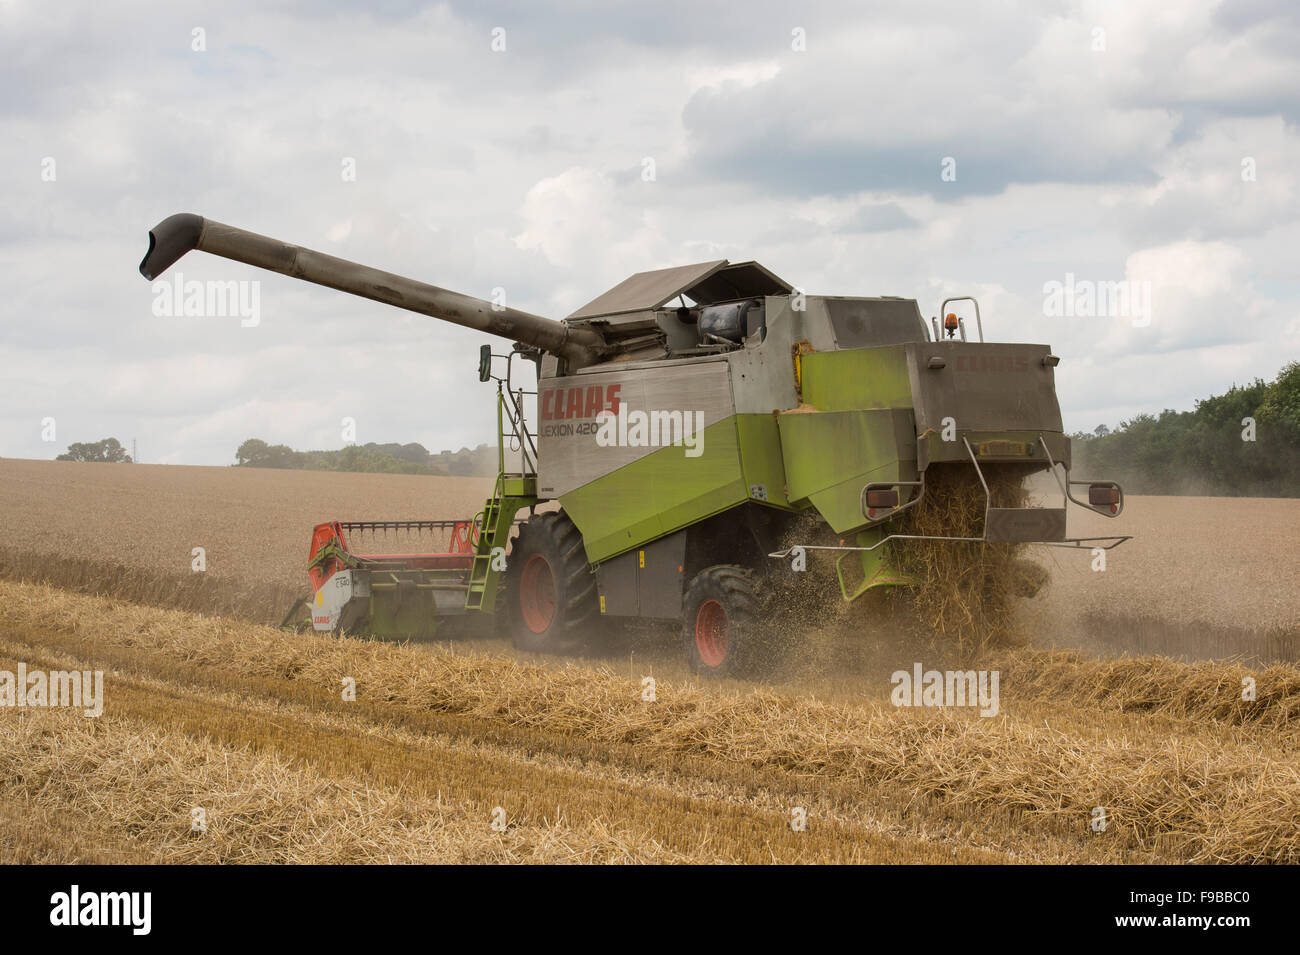 Leistungsstarke landwirtschaftlichen Maschine (Claas Mähdrescher) arbeiten  im Weizenfeld Schneiden reif Getreide Ernte bei Ernte - North Yorkshire,  England, UK Stockfotografie - Alamy